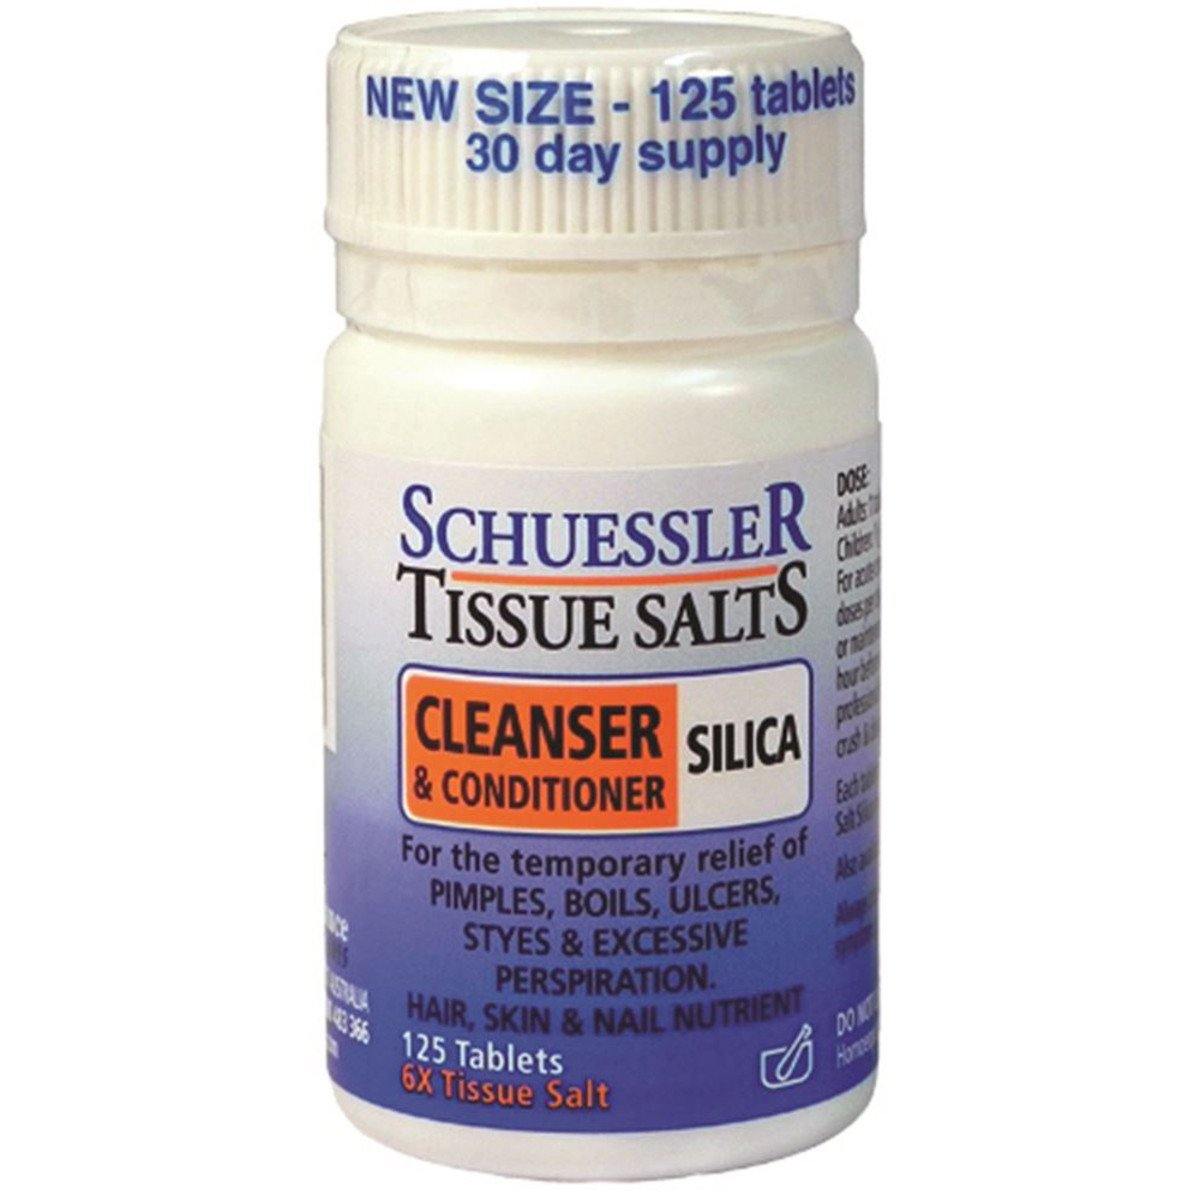 Martin & Pleasance Schuessler Tissue Salts Silica (Cleanser & Conditioner) 125 Tablets - QVM Vitamins™